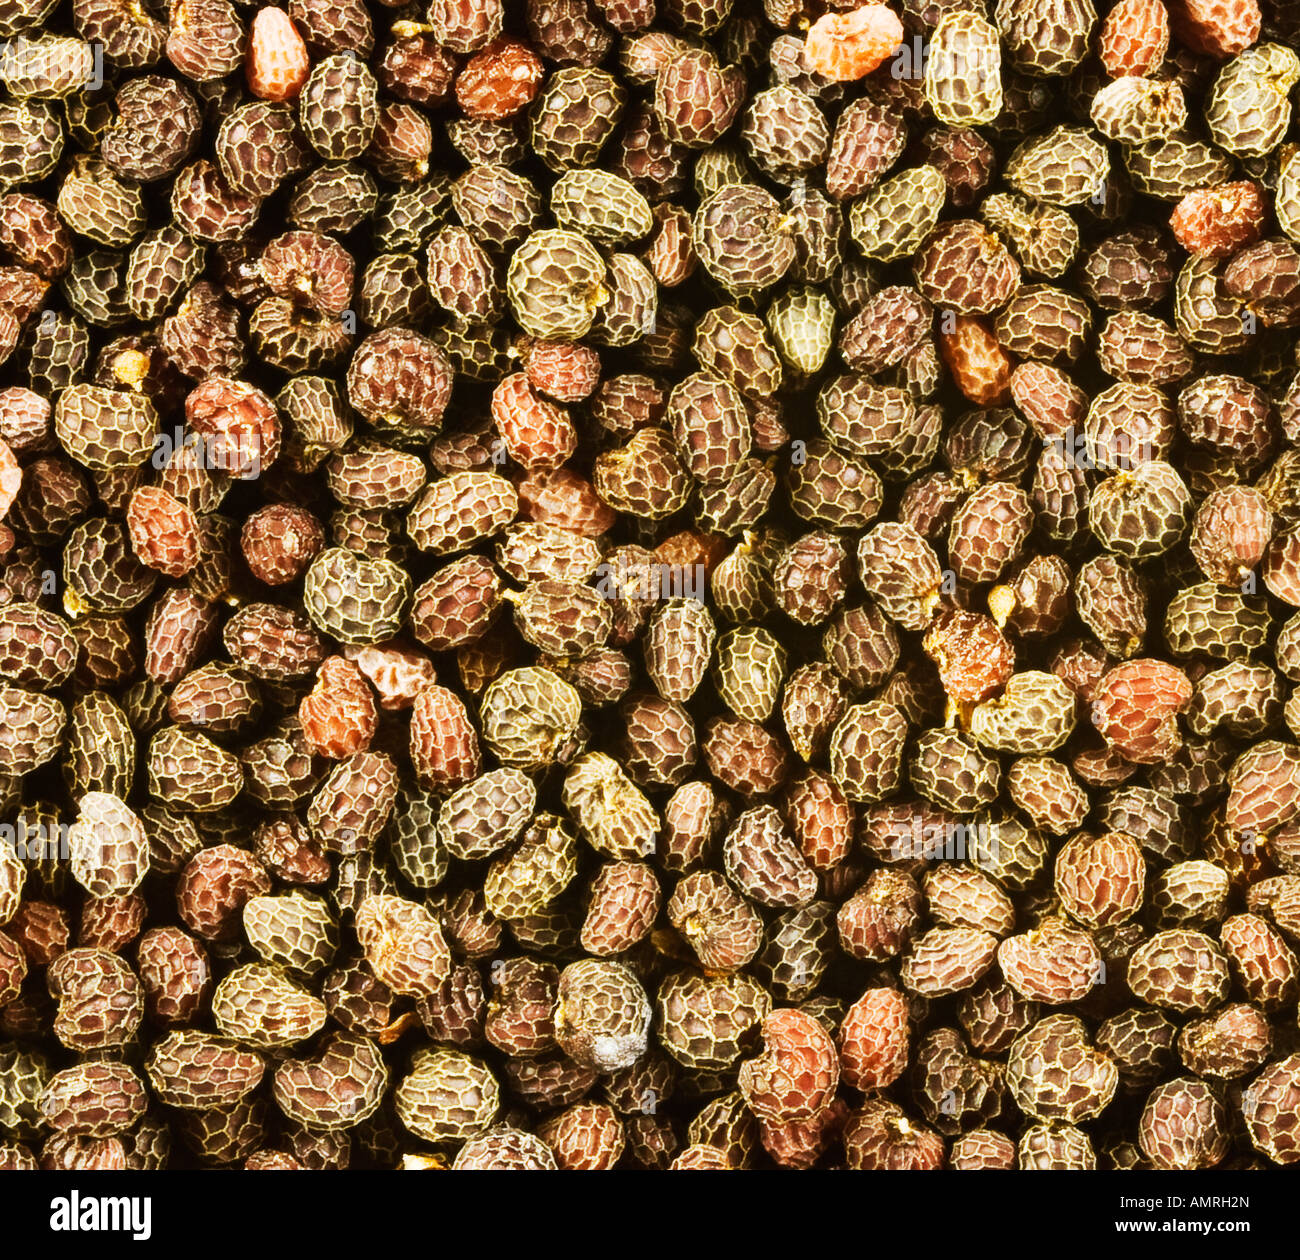 Les graines de pavot à opium, 3x de grossissement Banque D'Images